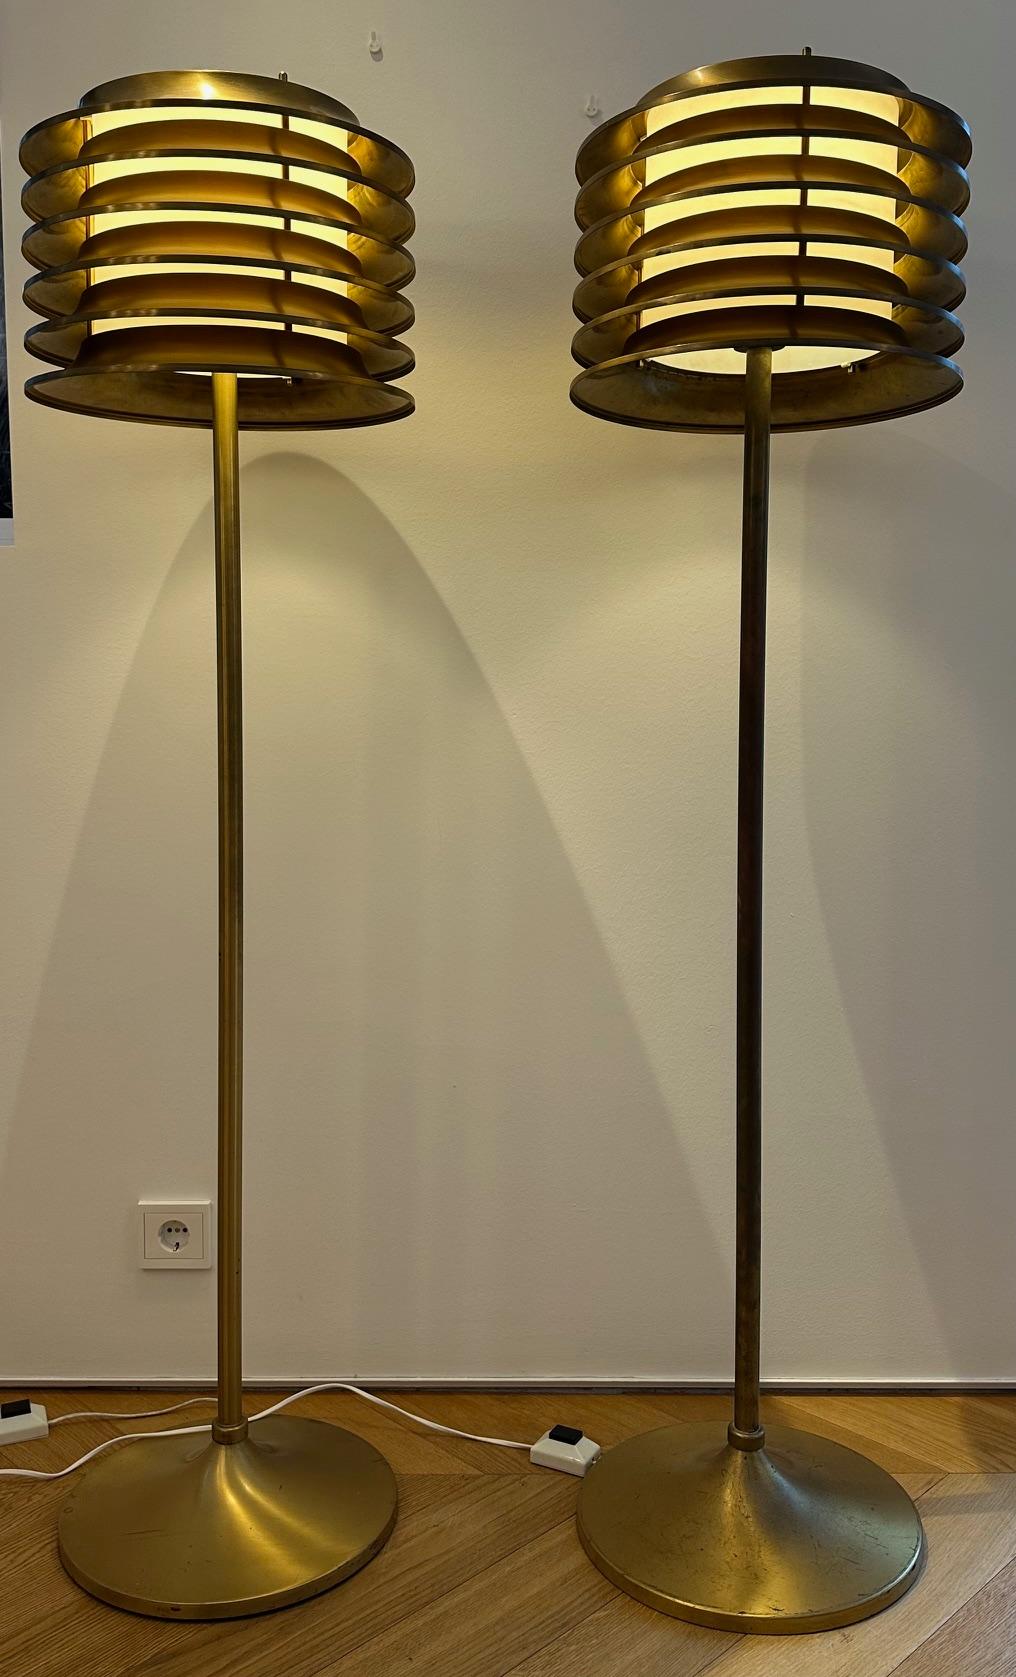 Ces lampes ont été conçues par Kai Ruokonen (Finnmark) pour l'hôtel Vaakuna à Helsinki dans les années 1970.  Une lampe très simple mais élégante en laiton massif avec une belle patine.

Il s'agit d'une occasion unique d'acquérir une paire de ces